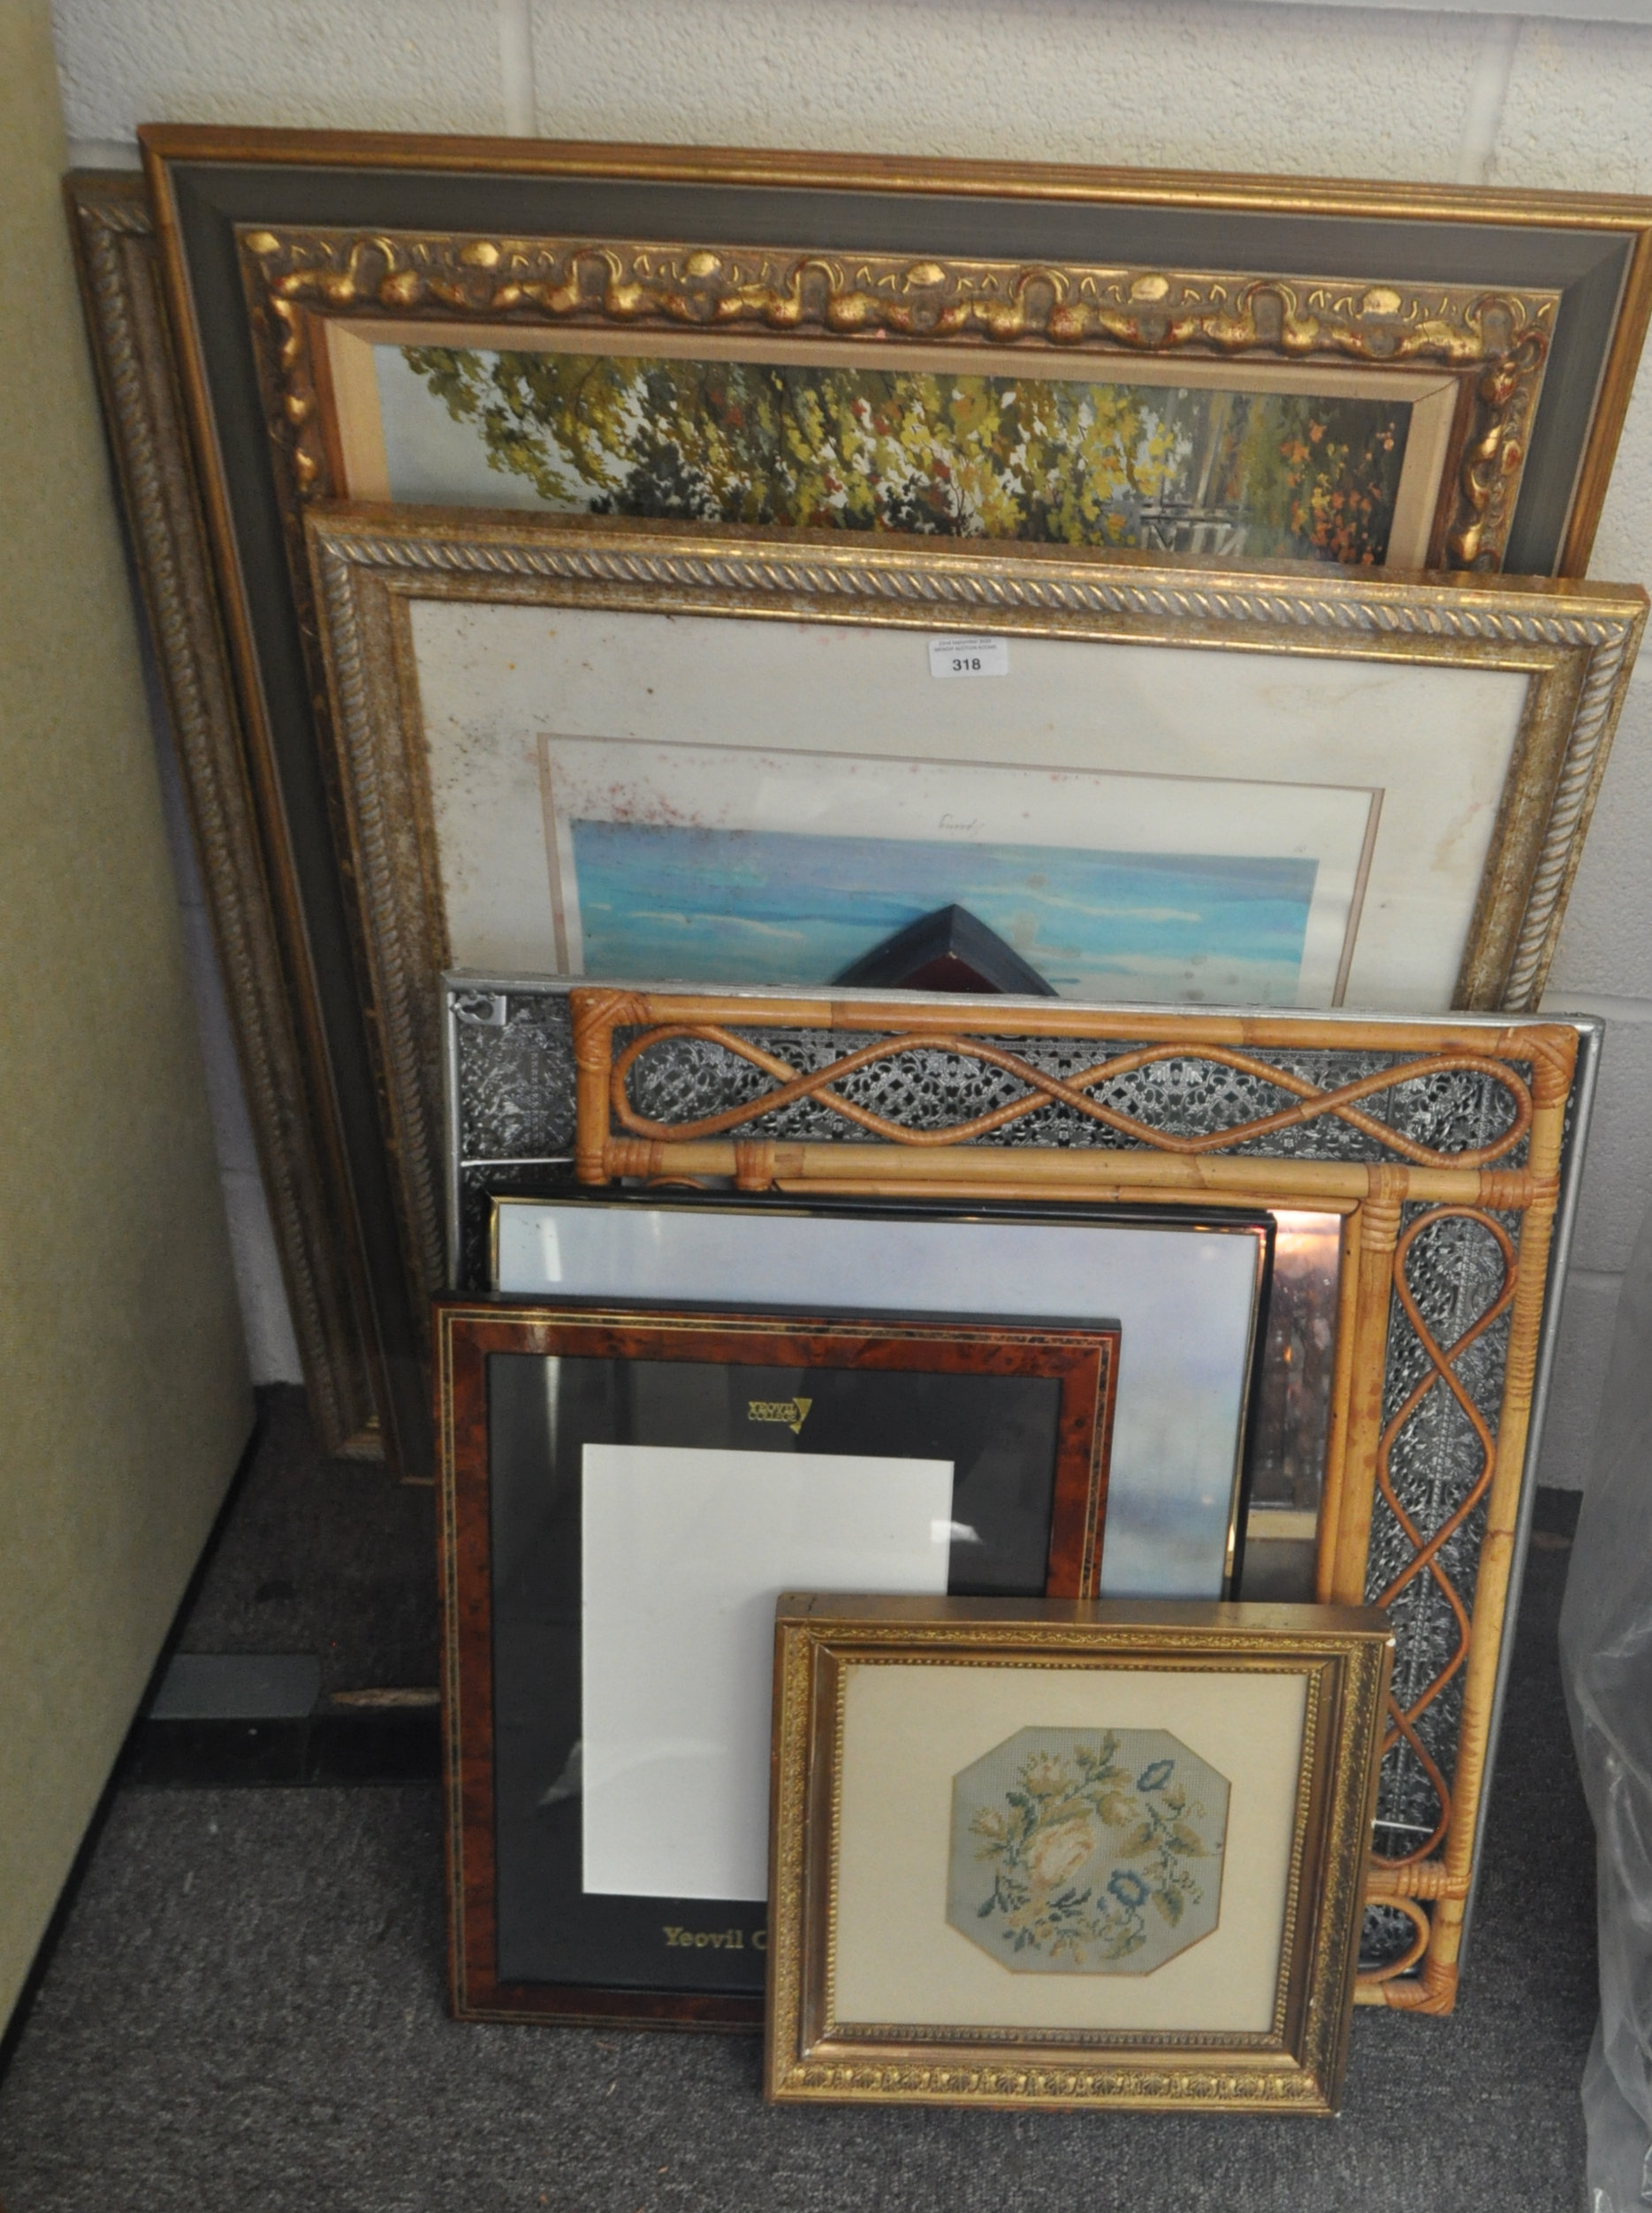 A group of framed works